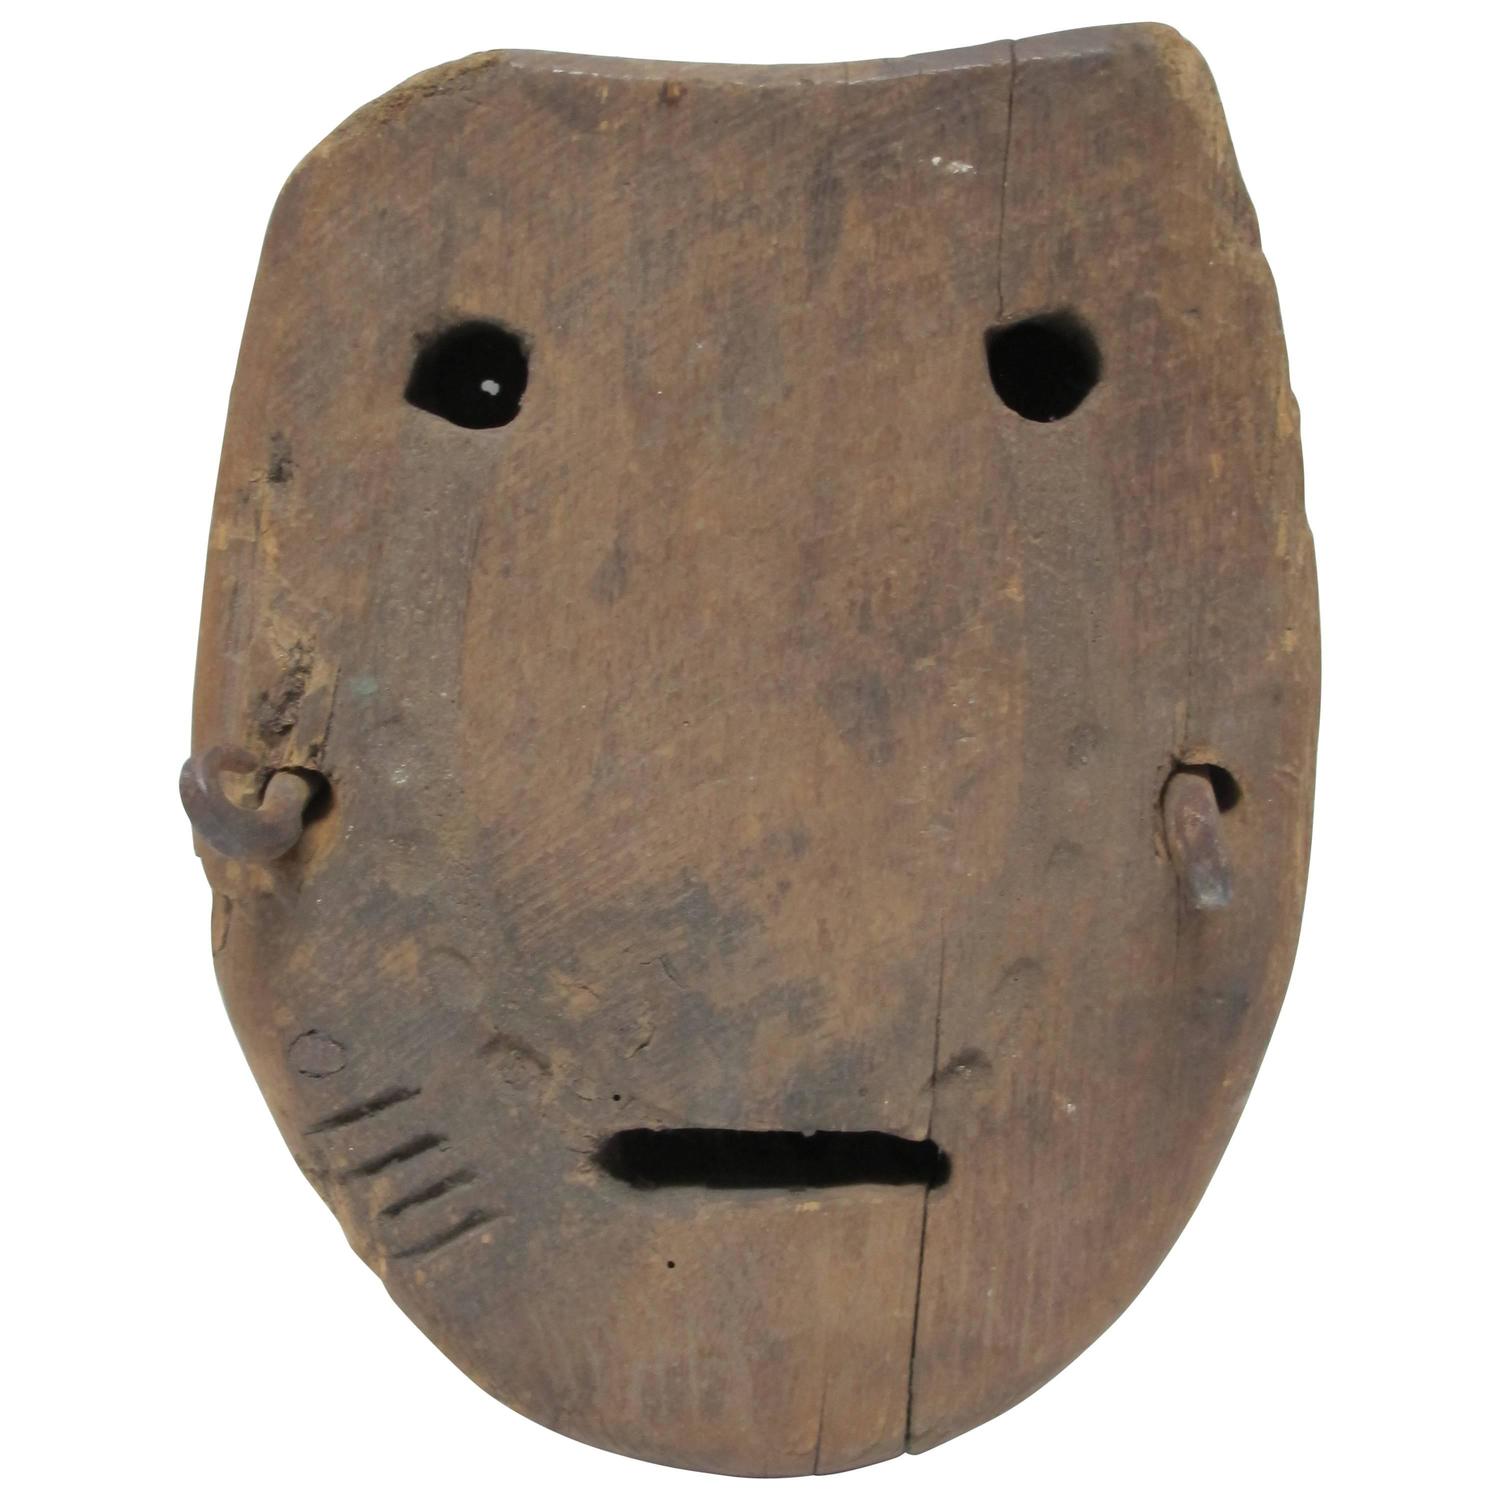 Wood Horse Bog Shoe Mask Image For Sale at 1stdibs